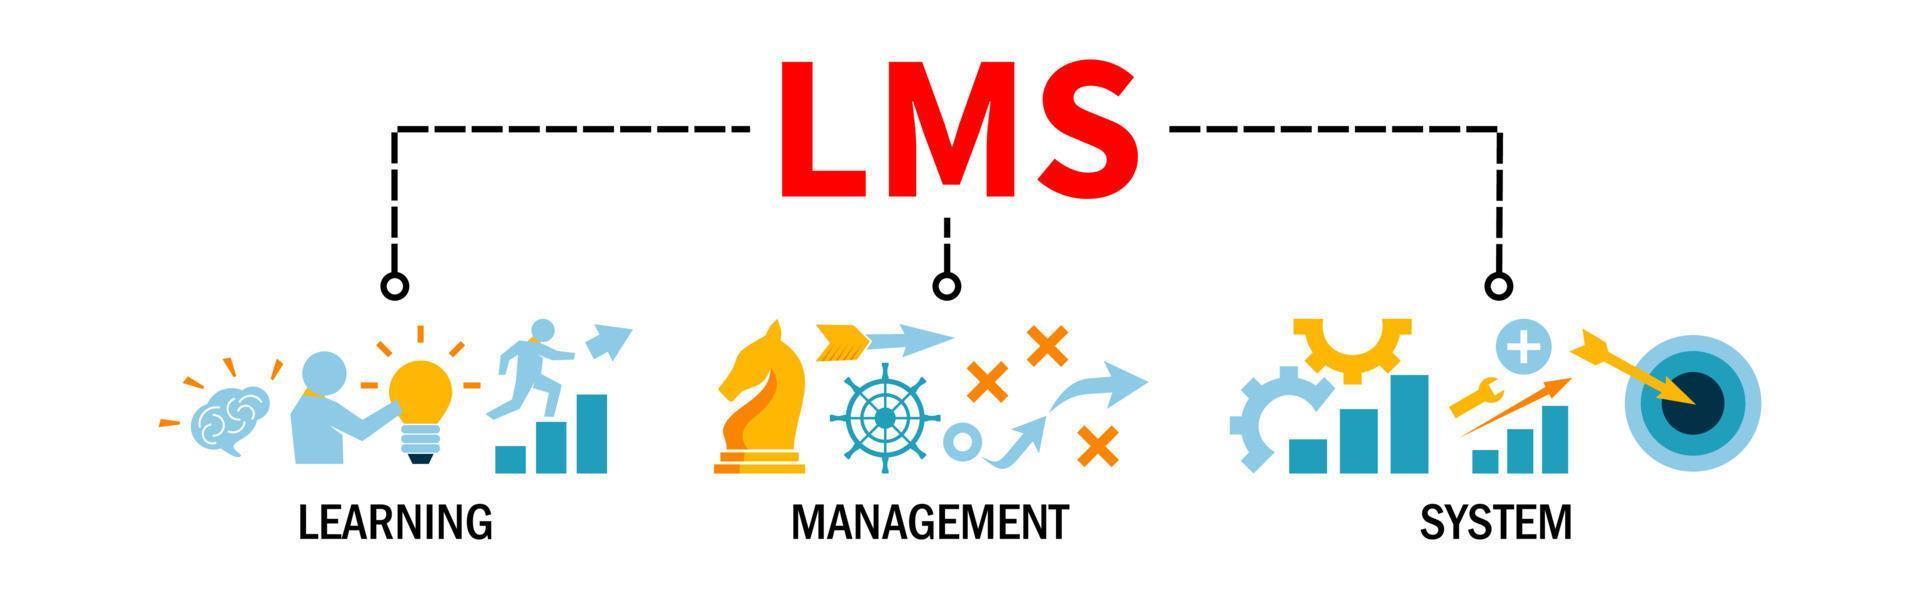 lms banner web illustrazione vettoriale concetto per il sistema di gestione dell'apprendimento con l'icona